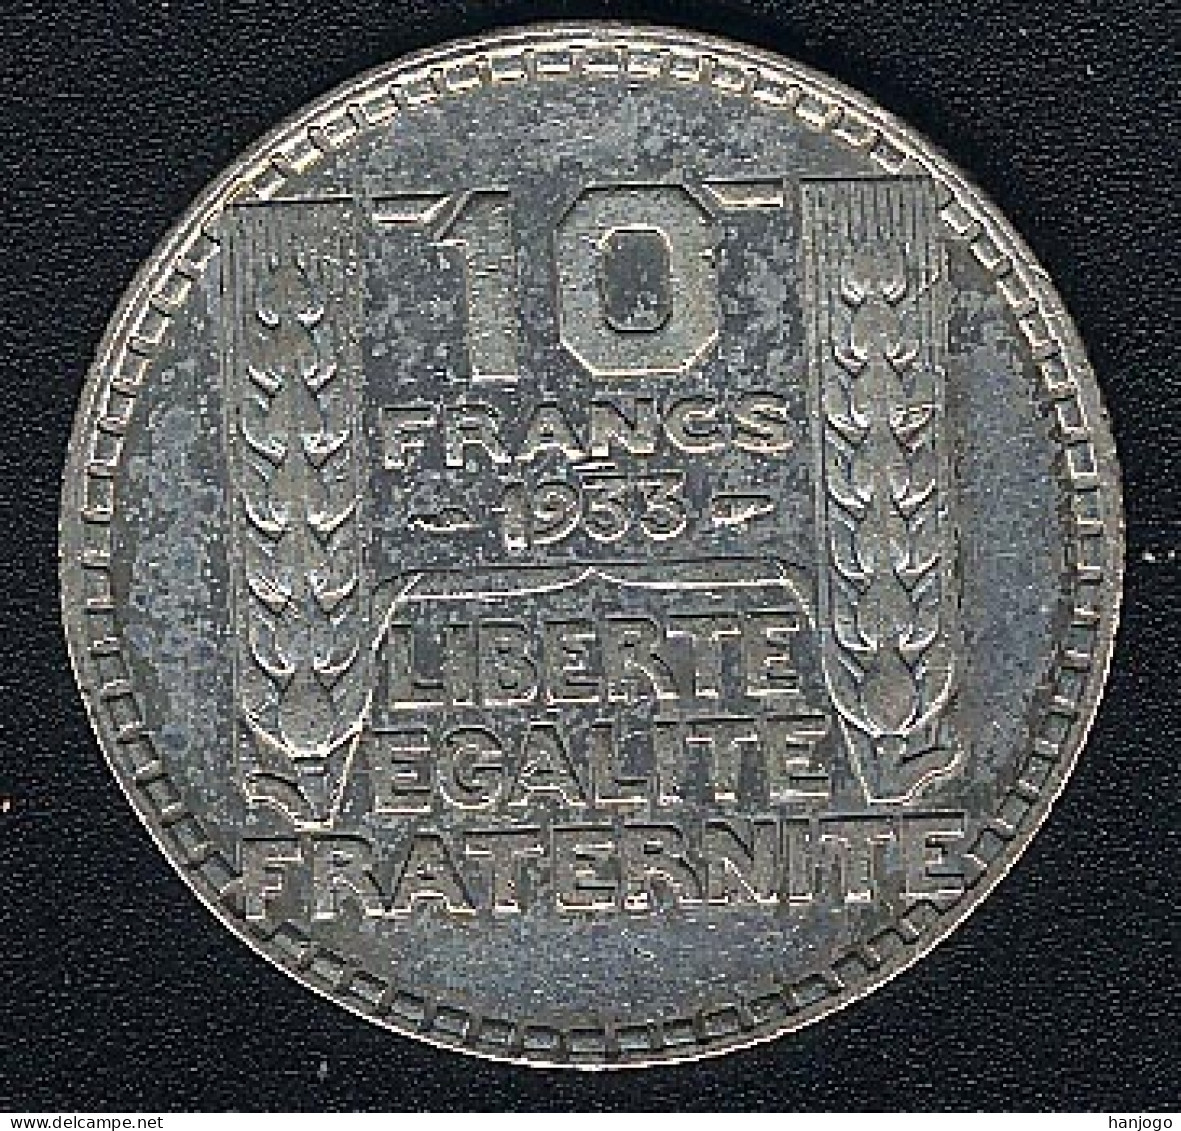 Frankreich, 10 Francs 1933, Silber - 10 Francs